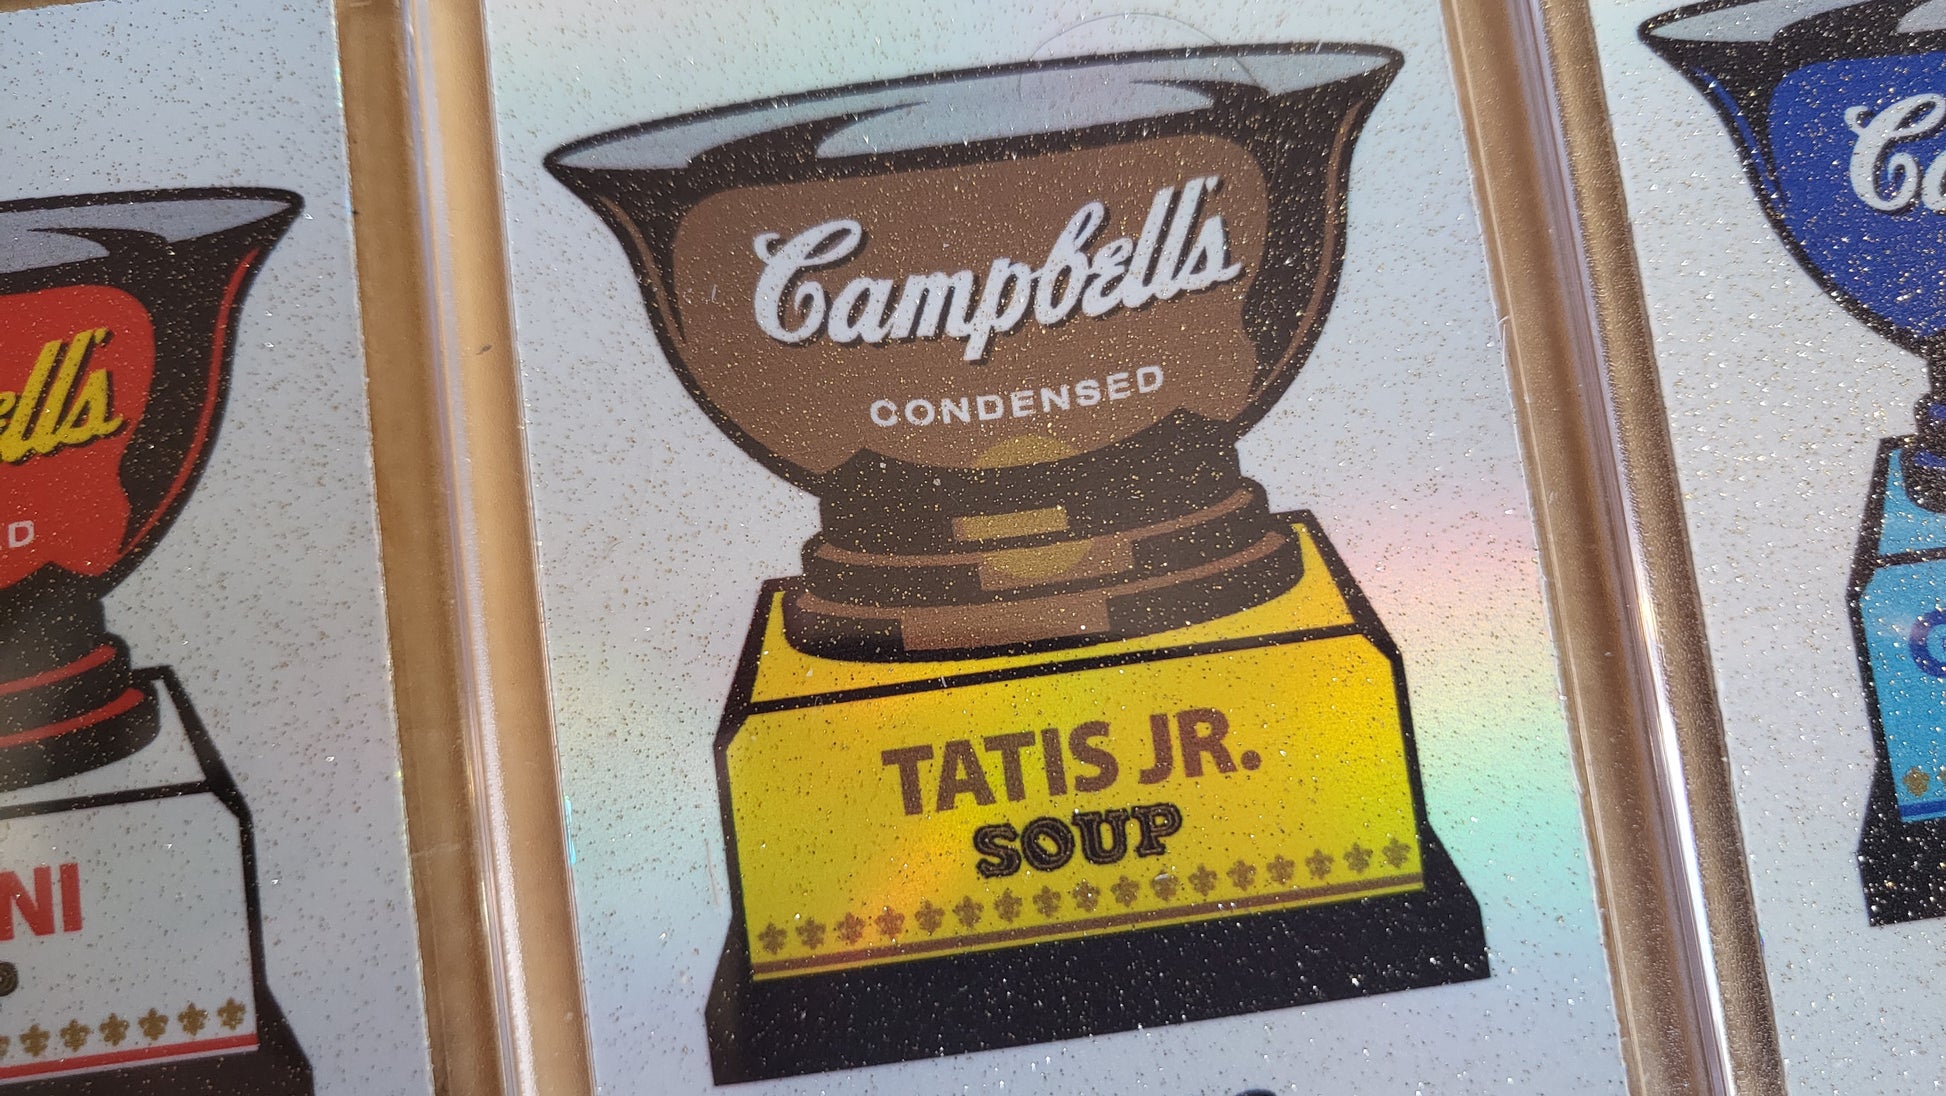 Matt Rosen - Topps All-Star Rookie Cup of Campbell's Soup